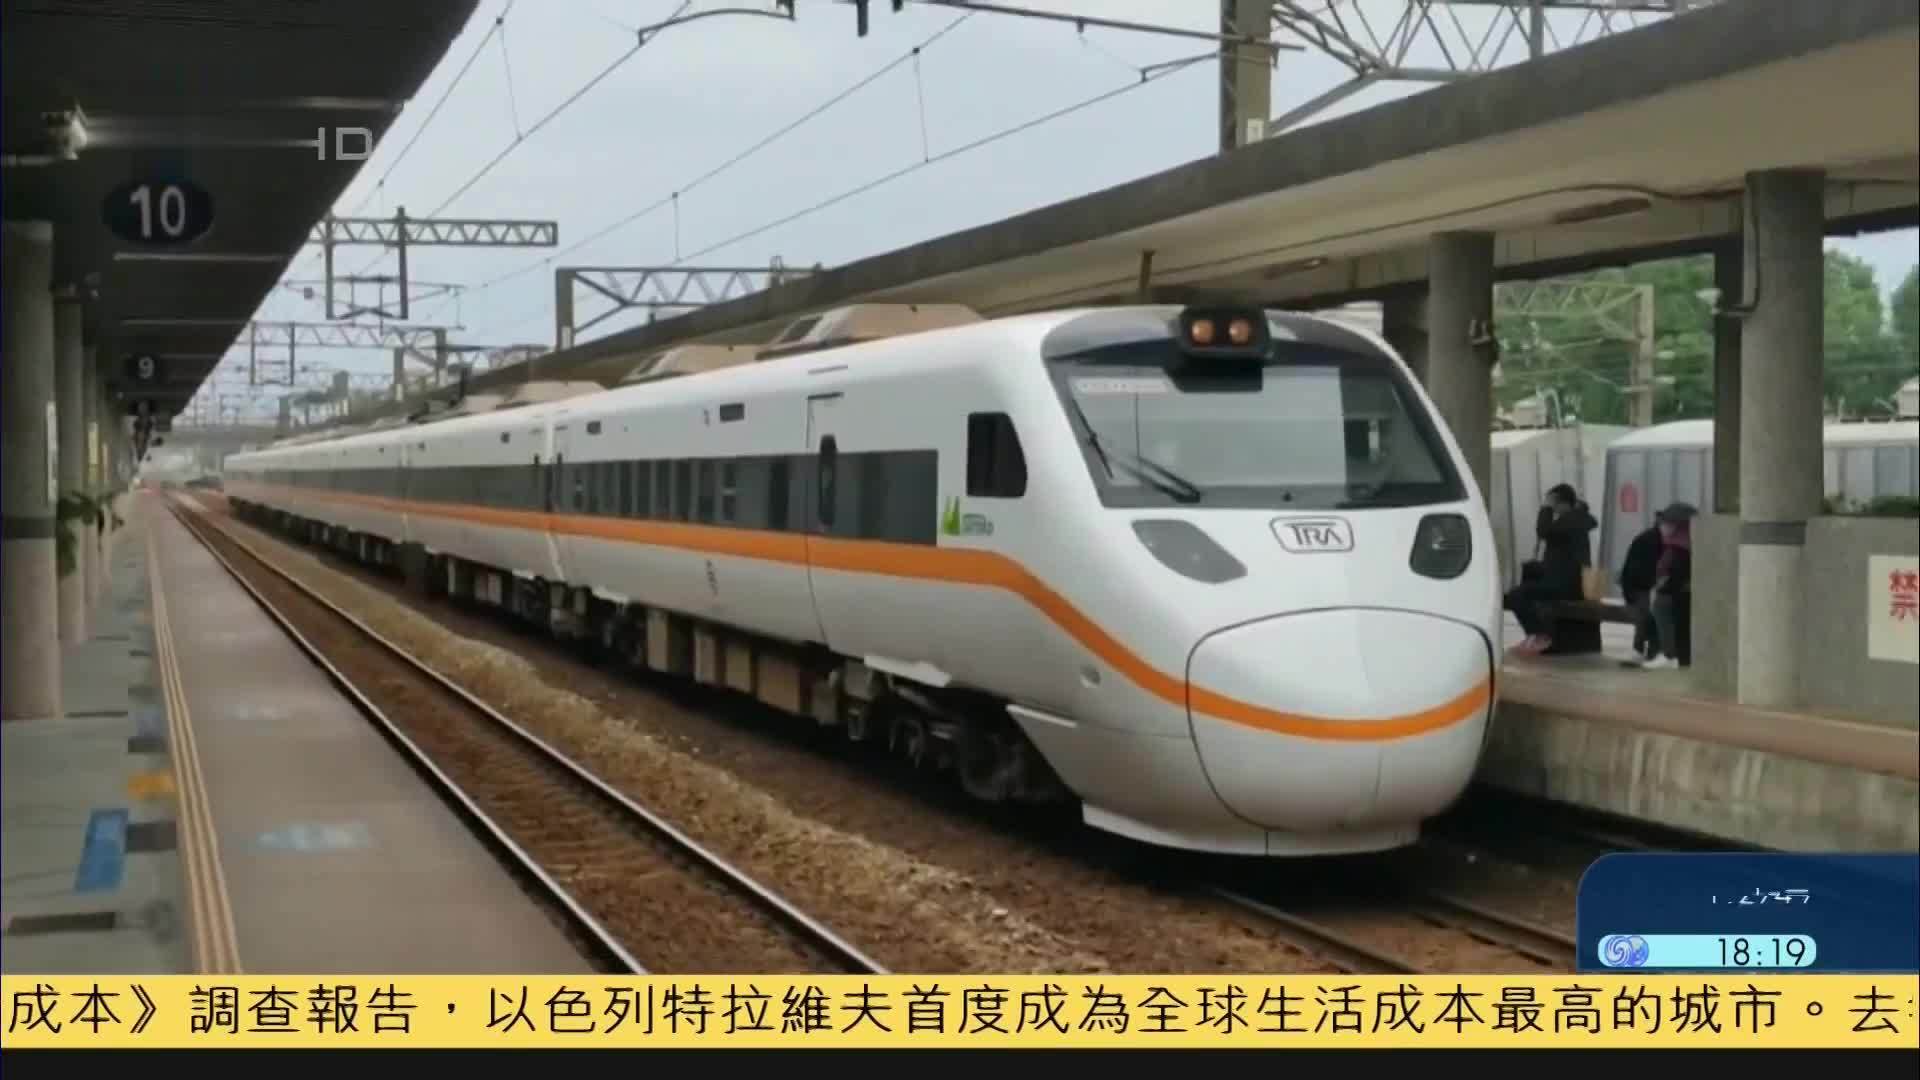 台湾火车壁纸安卓版应用APK下载